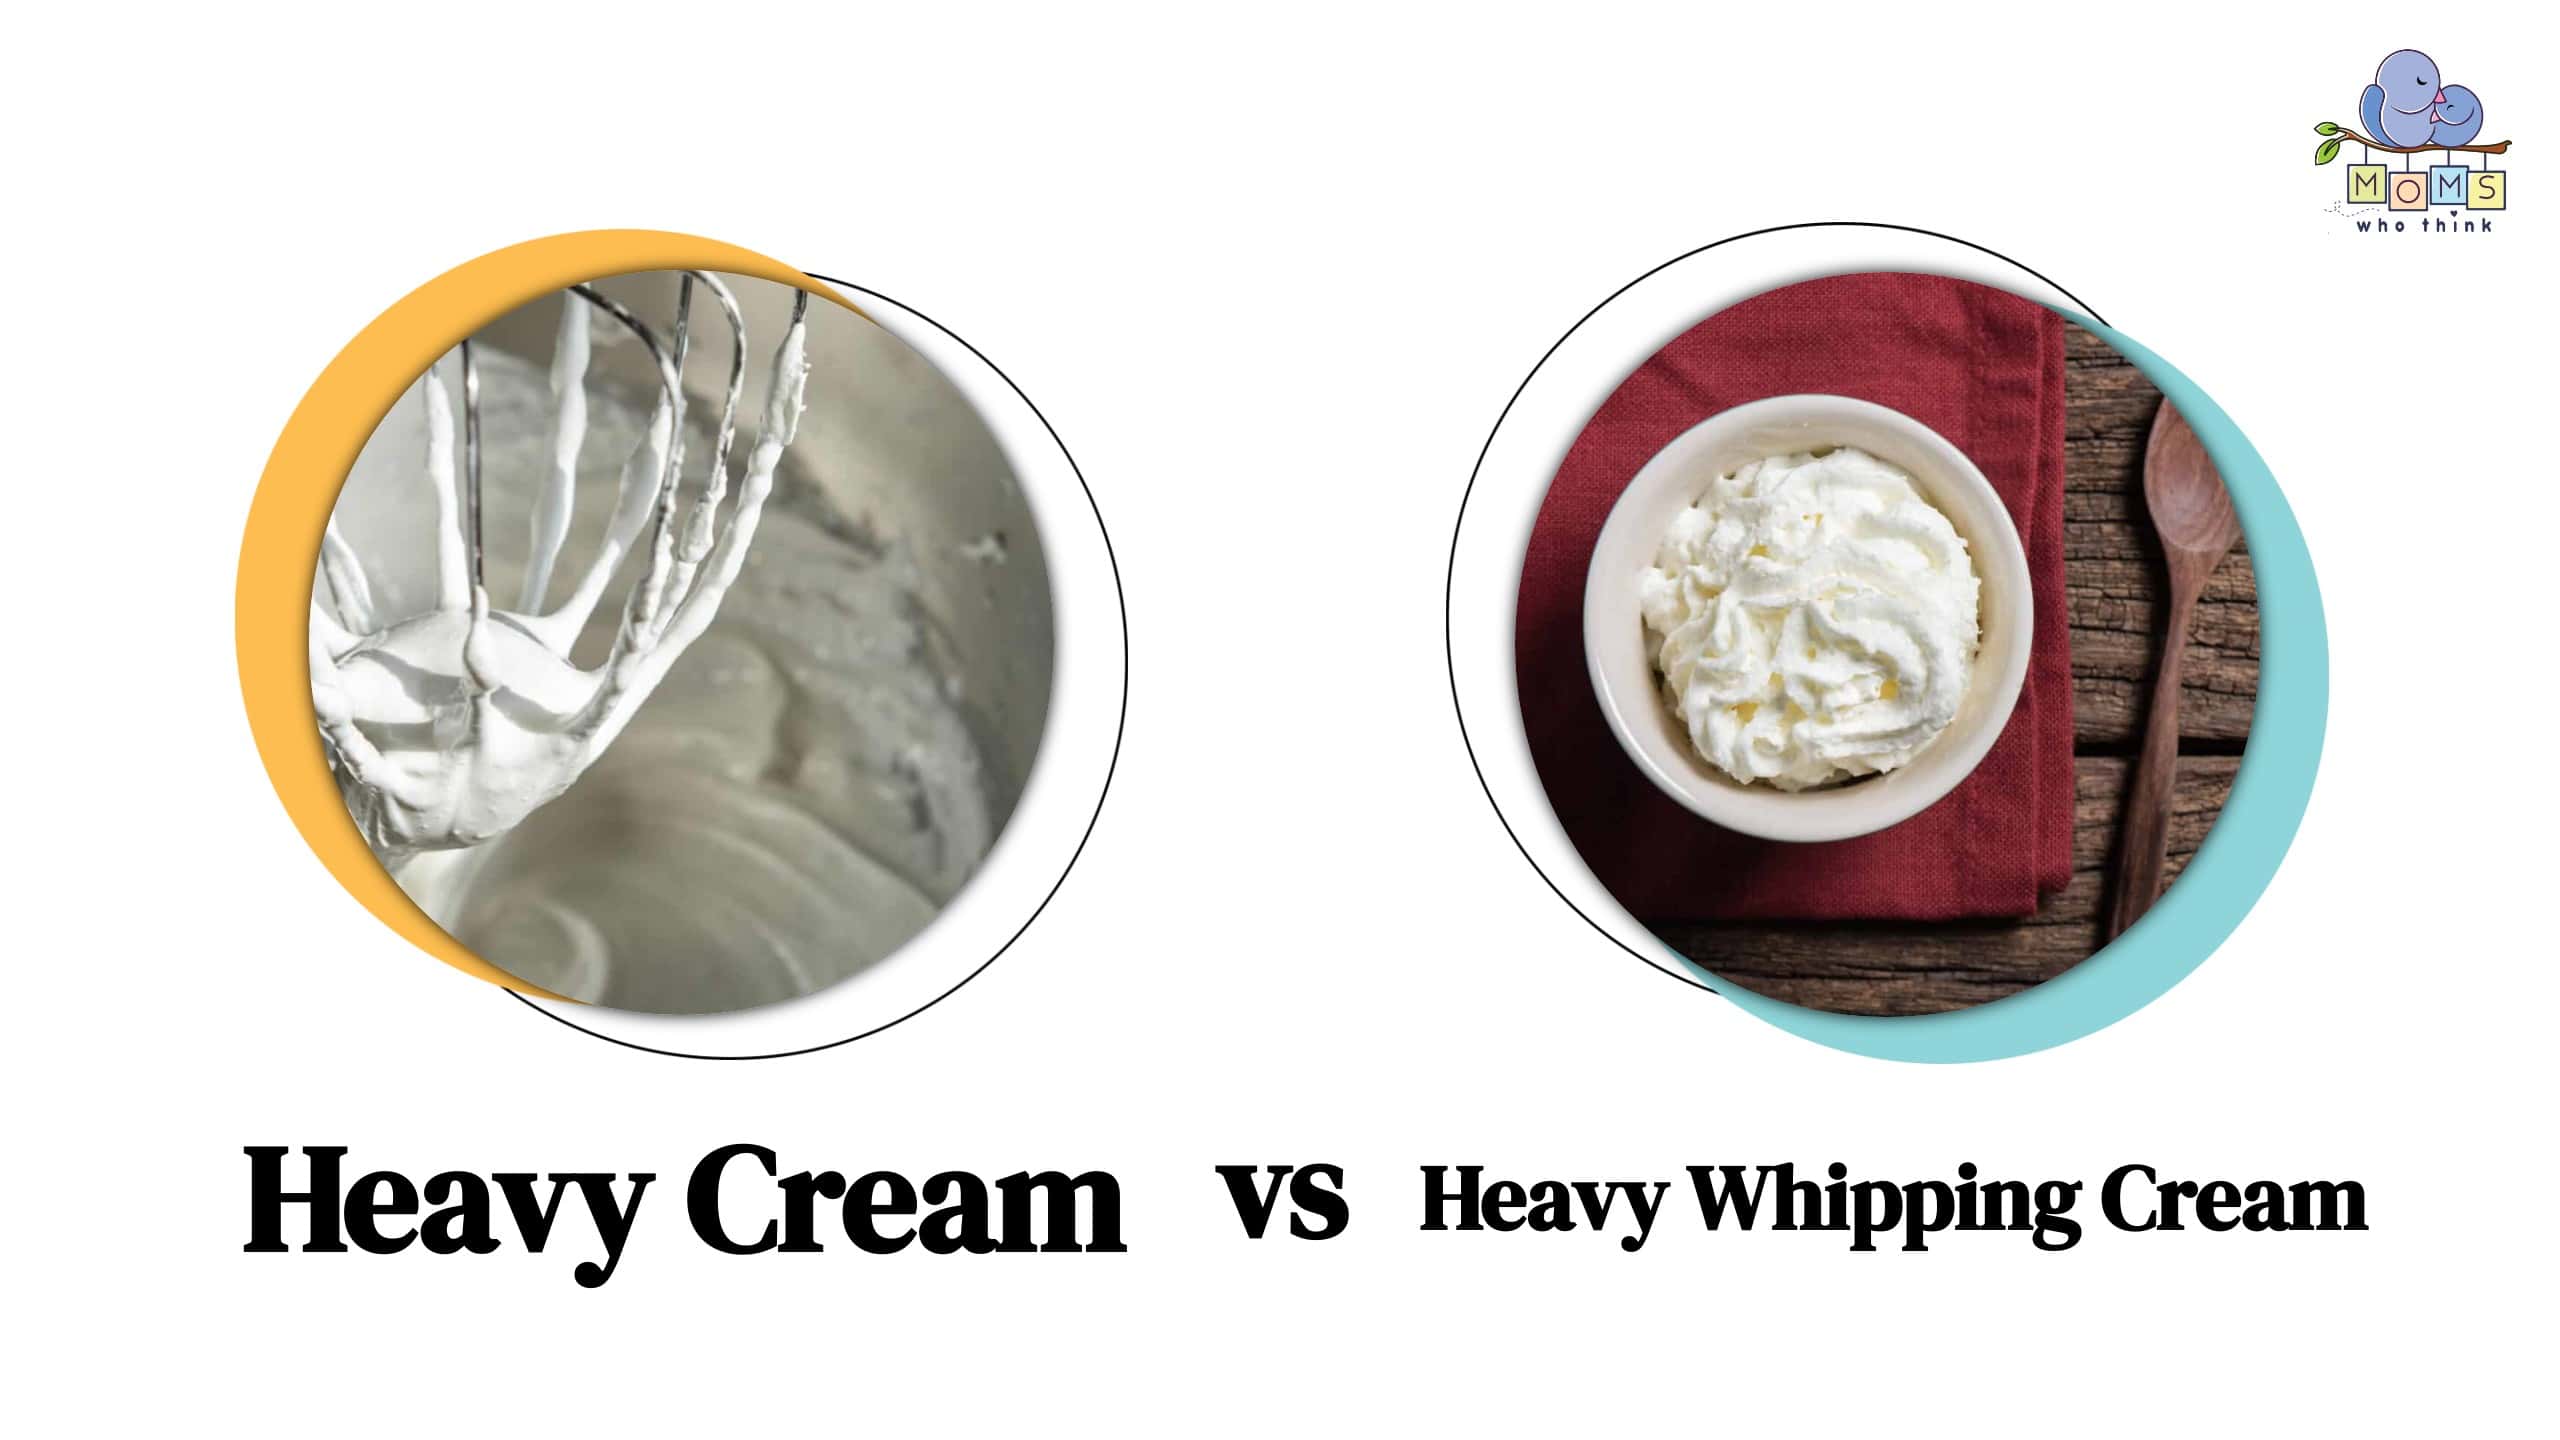 Heavy Cream vs Heavy Whipping Cream